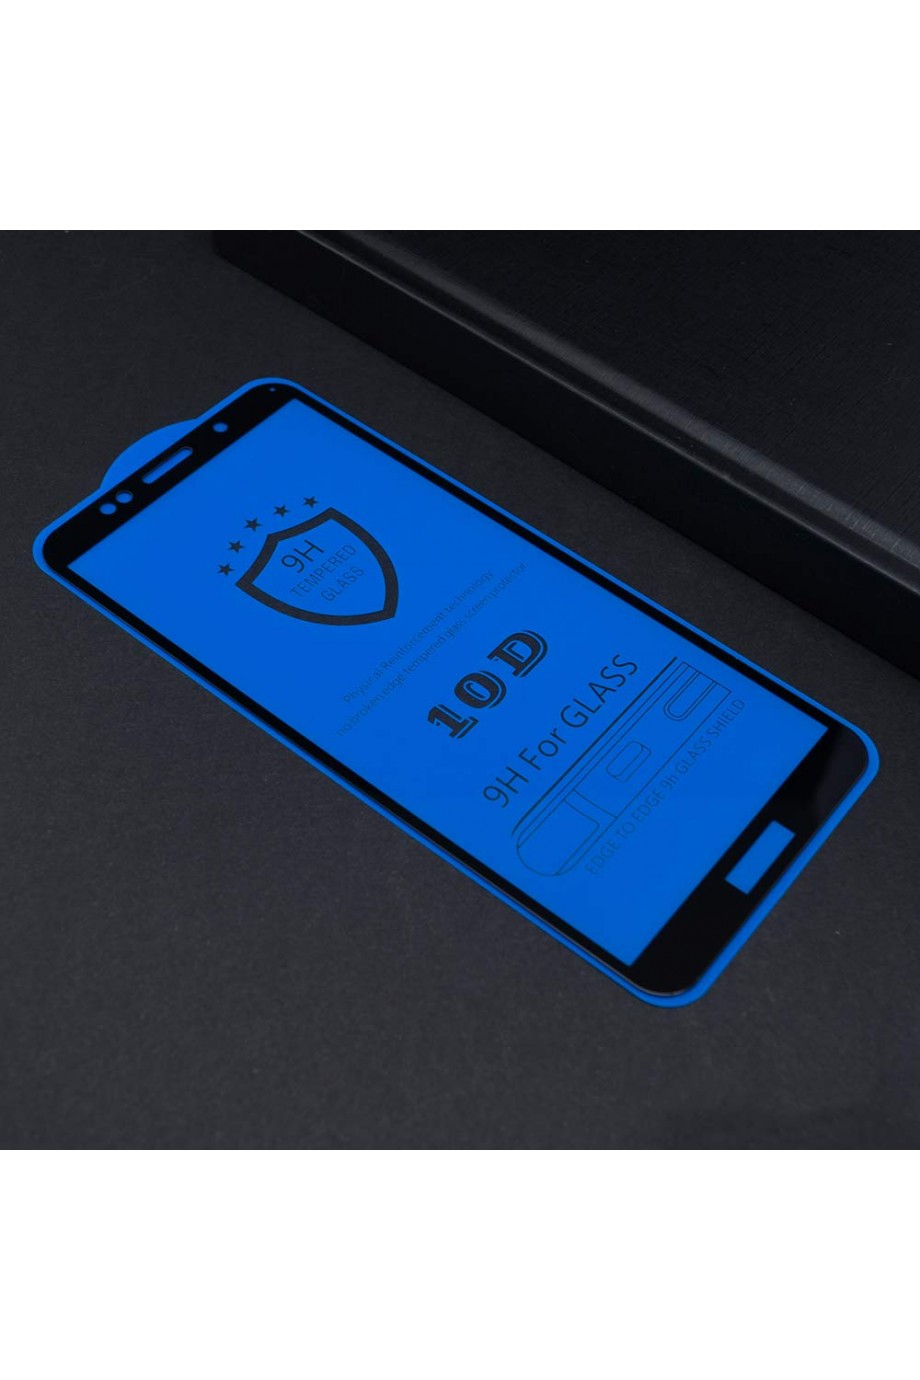 Защитное стекло 10D Mikomo для Huawei Y5 Prime 2018, черная рамка, полный клей, mk29